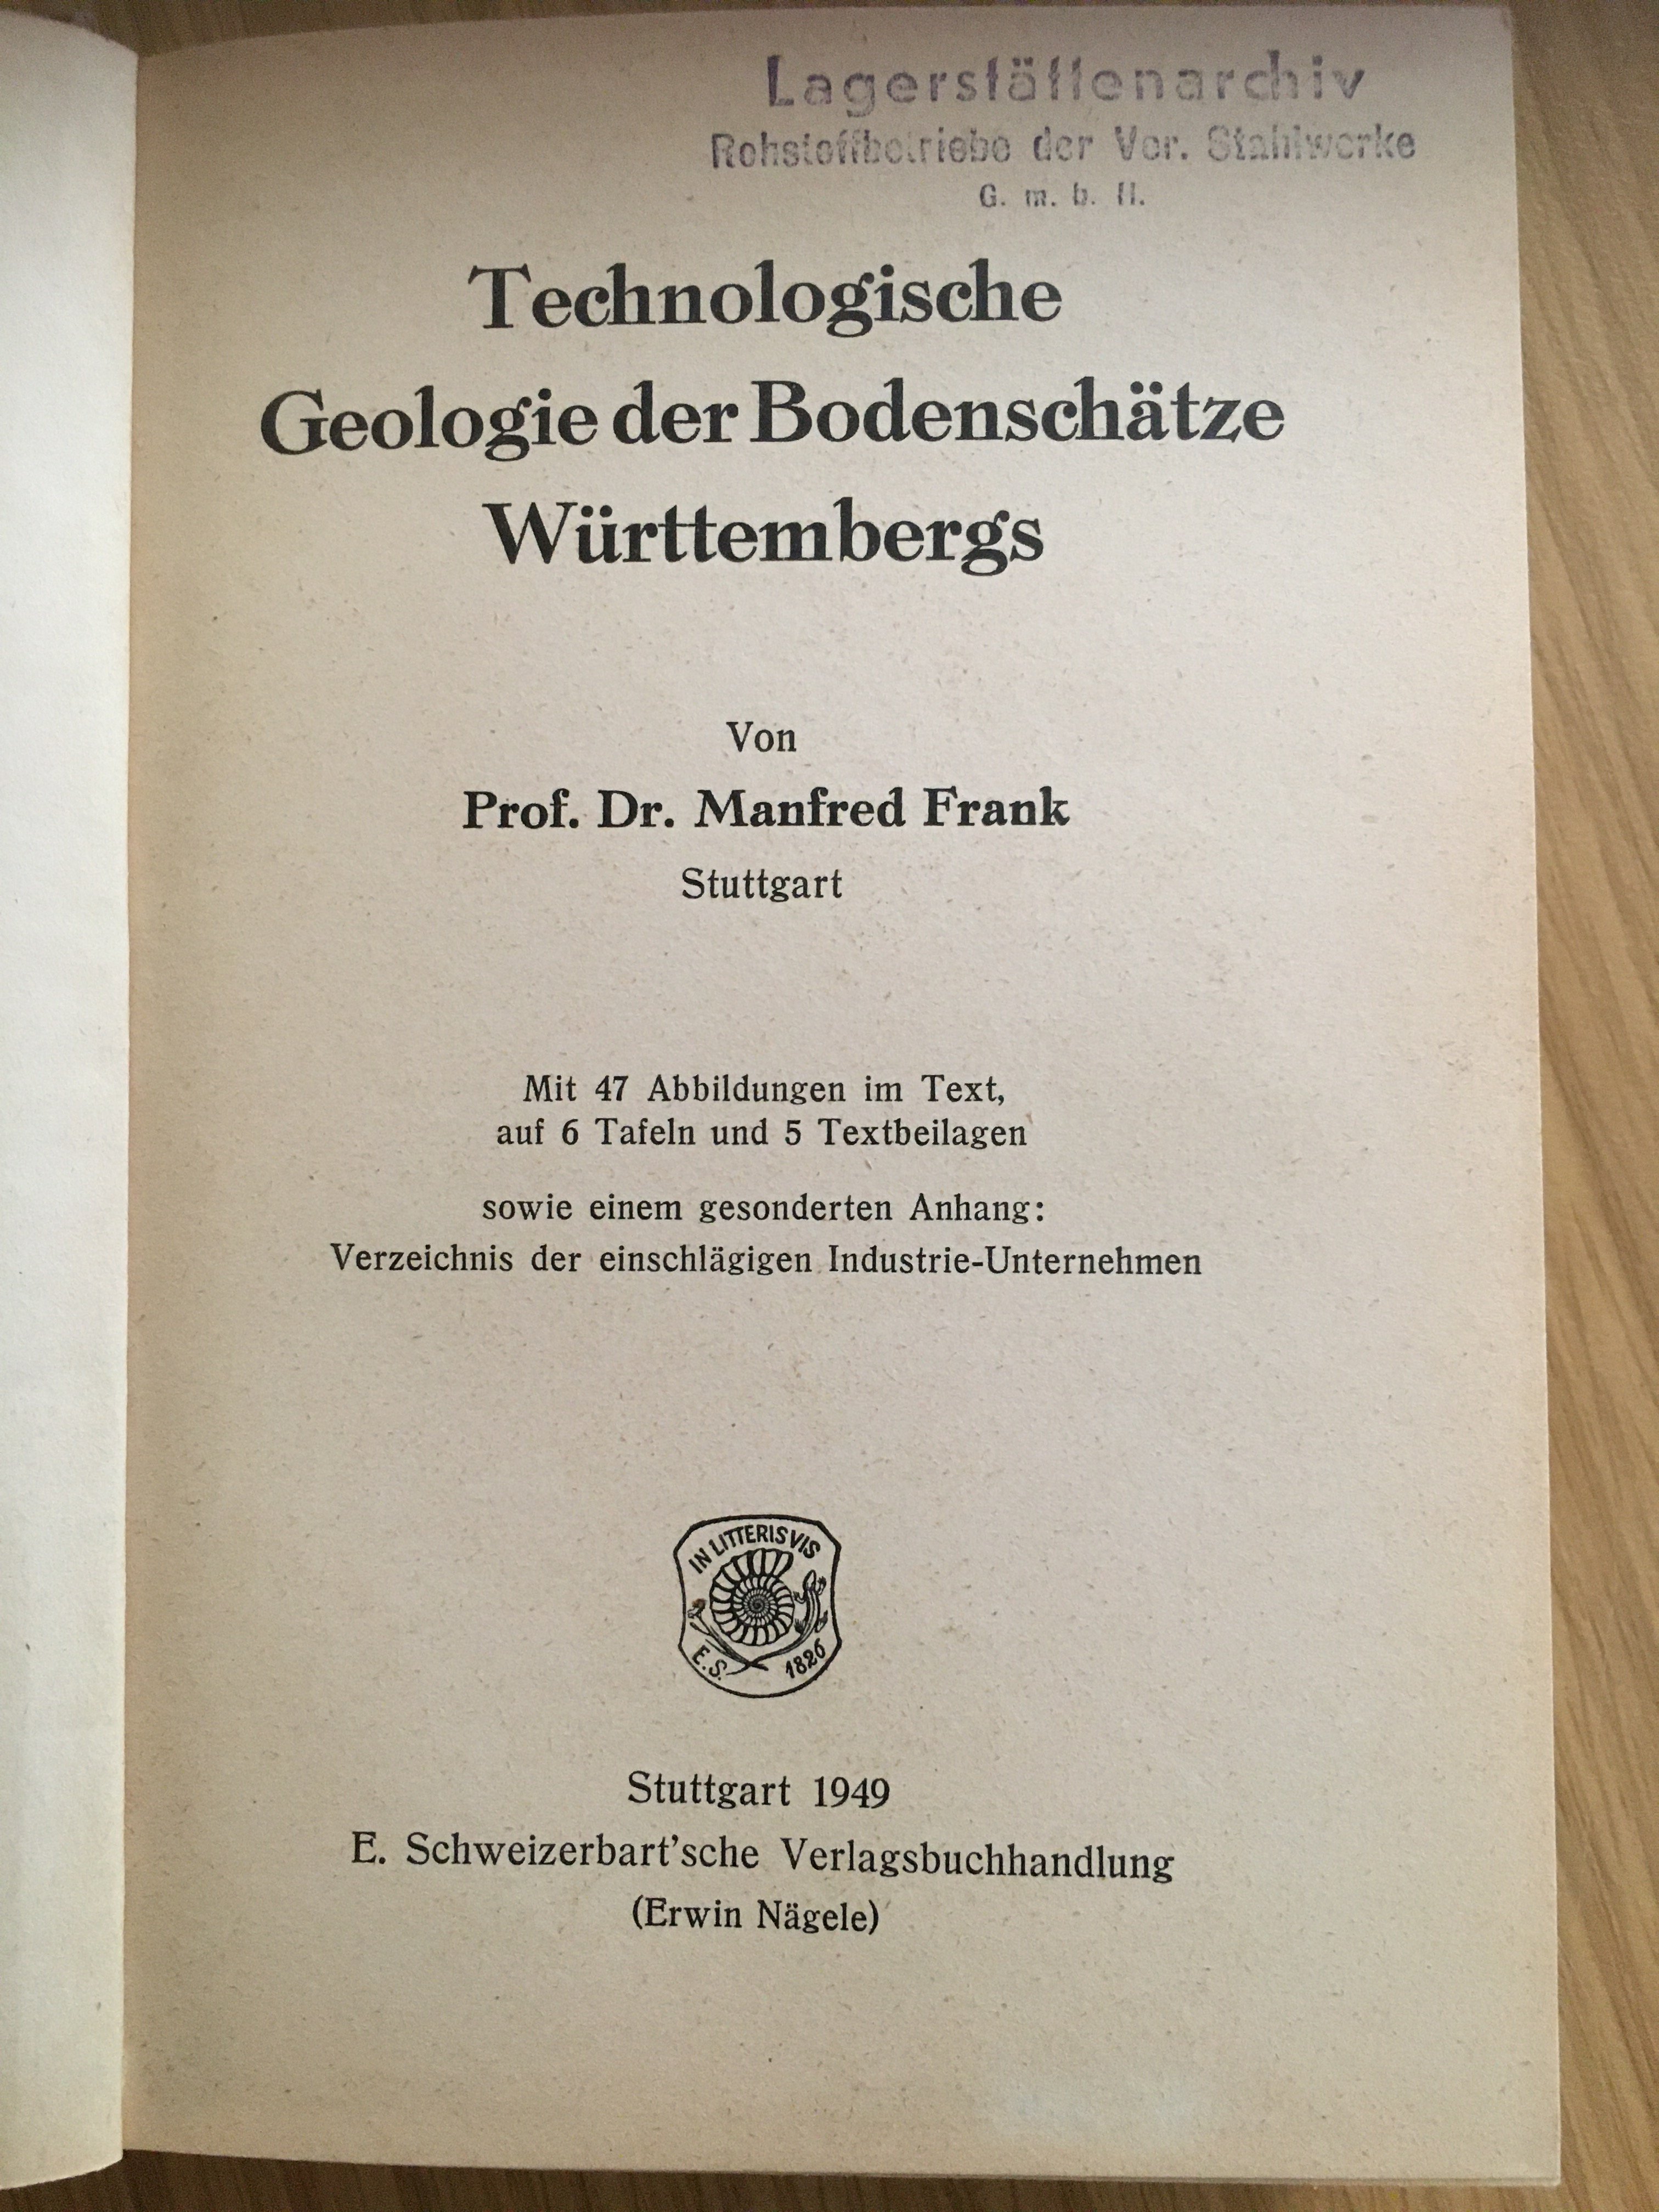 Technologische Geologie (Besucherbergwerk und Bergbaumuseum "Grube Silberhardt" CC BY-NC-SA)